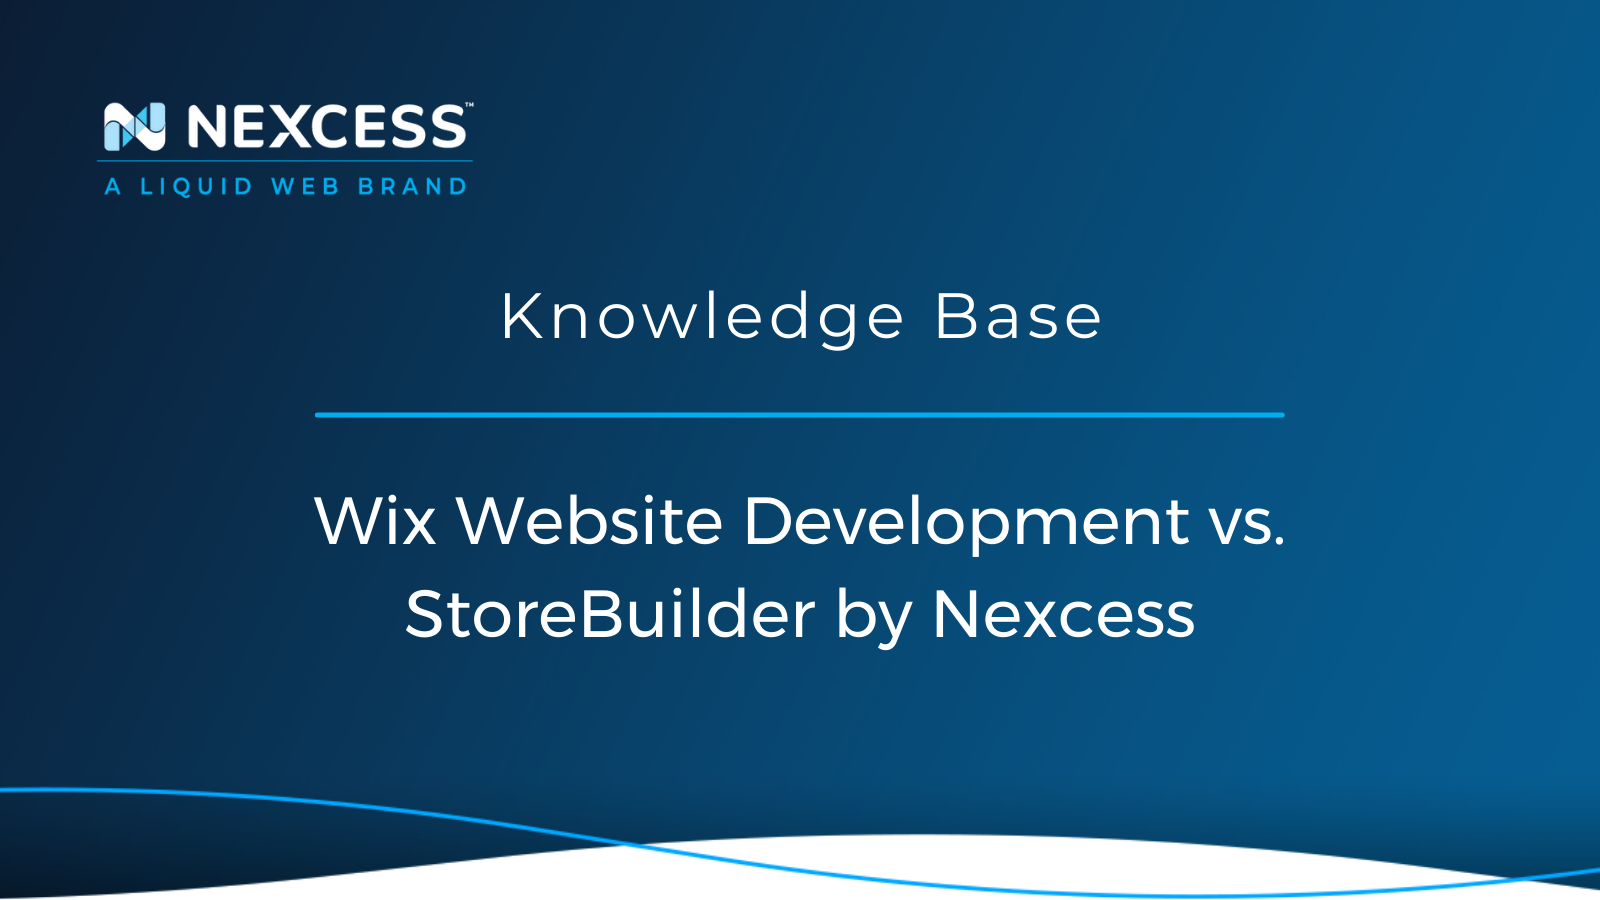 Wix Website Development vs. StoreBuilder by Nexcess